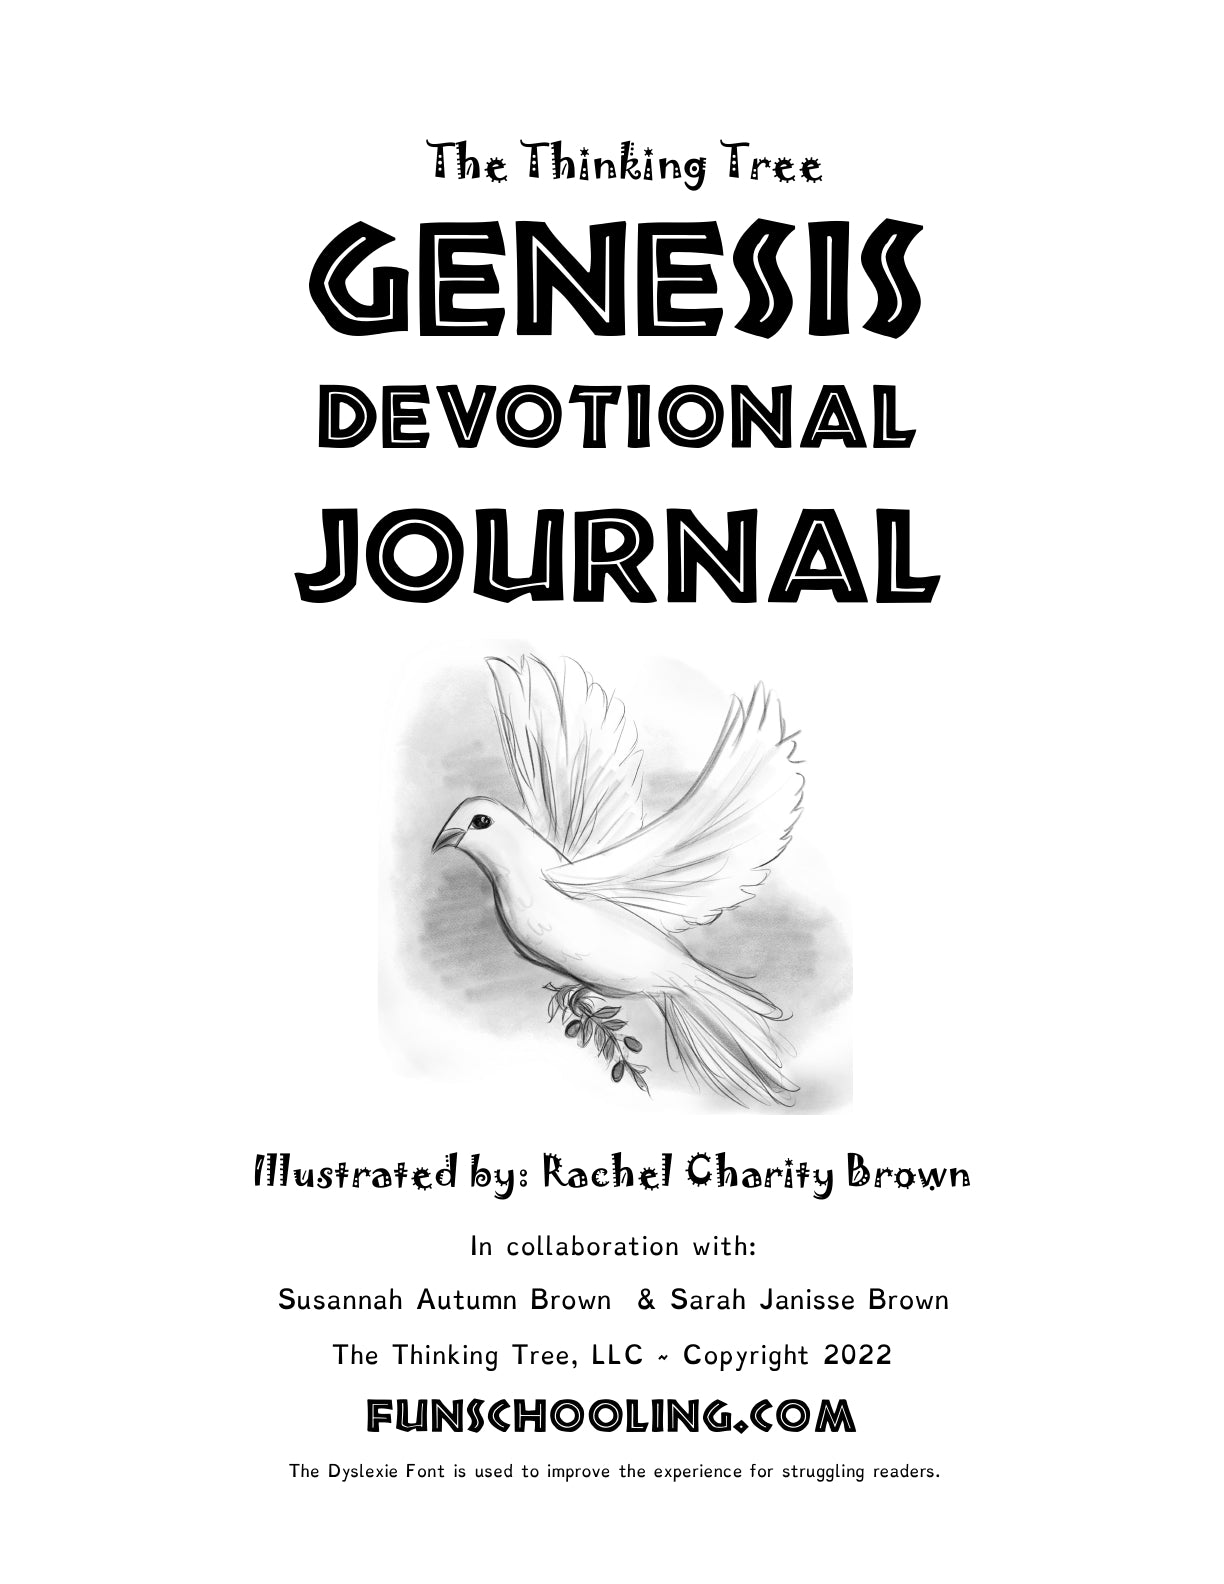 (Age 9+) Genesis Devotional Journal